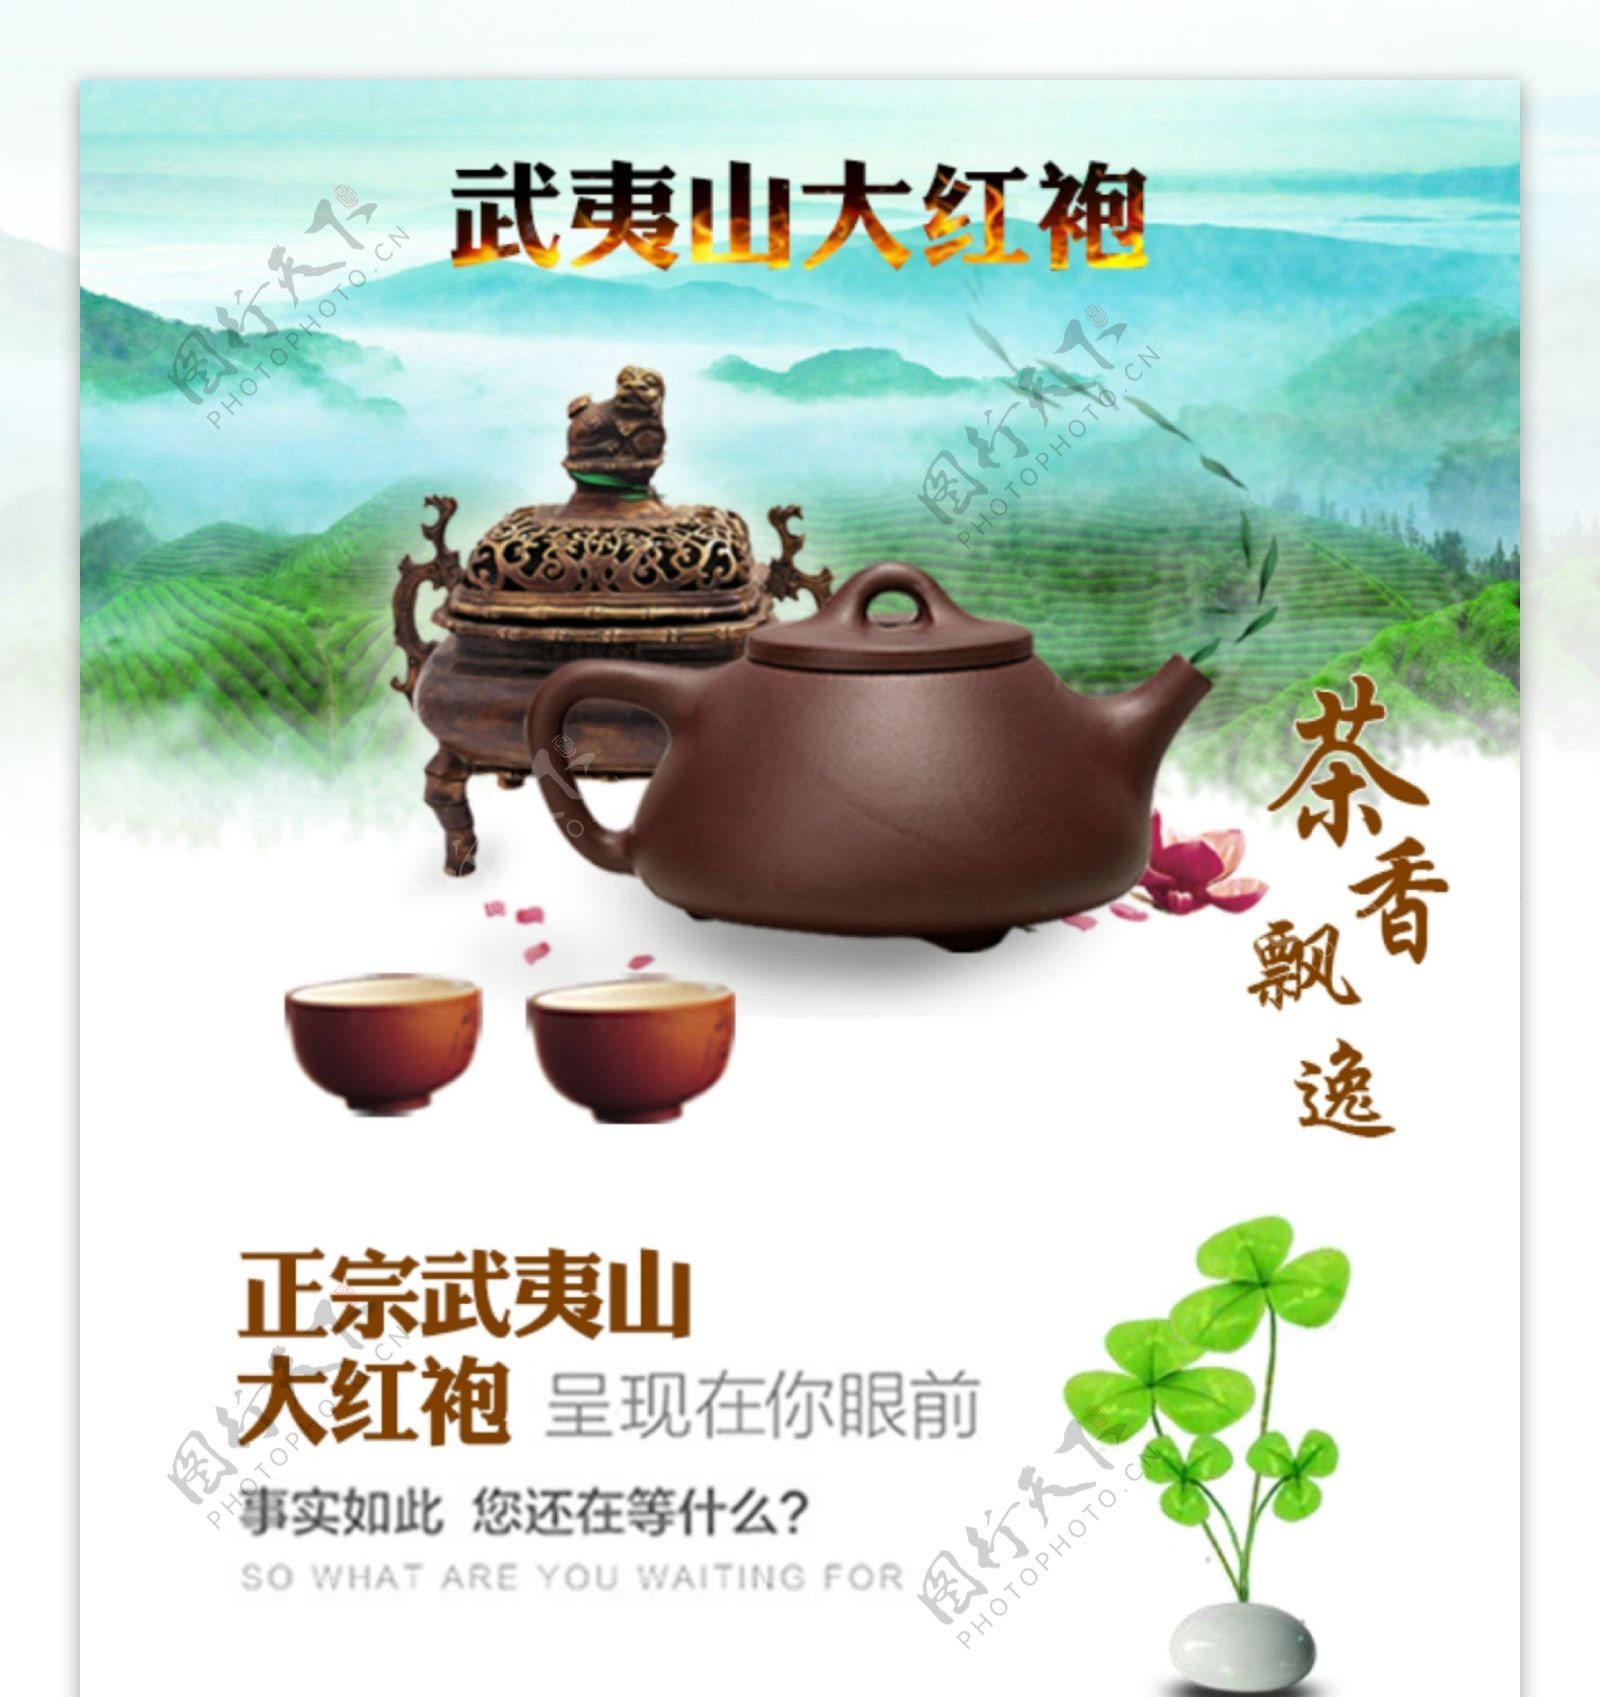 武夷山大红袍茶叶淘宝详情页设计